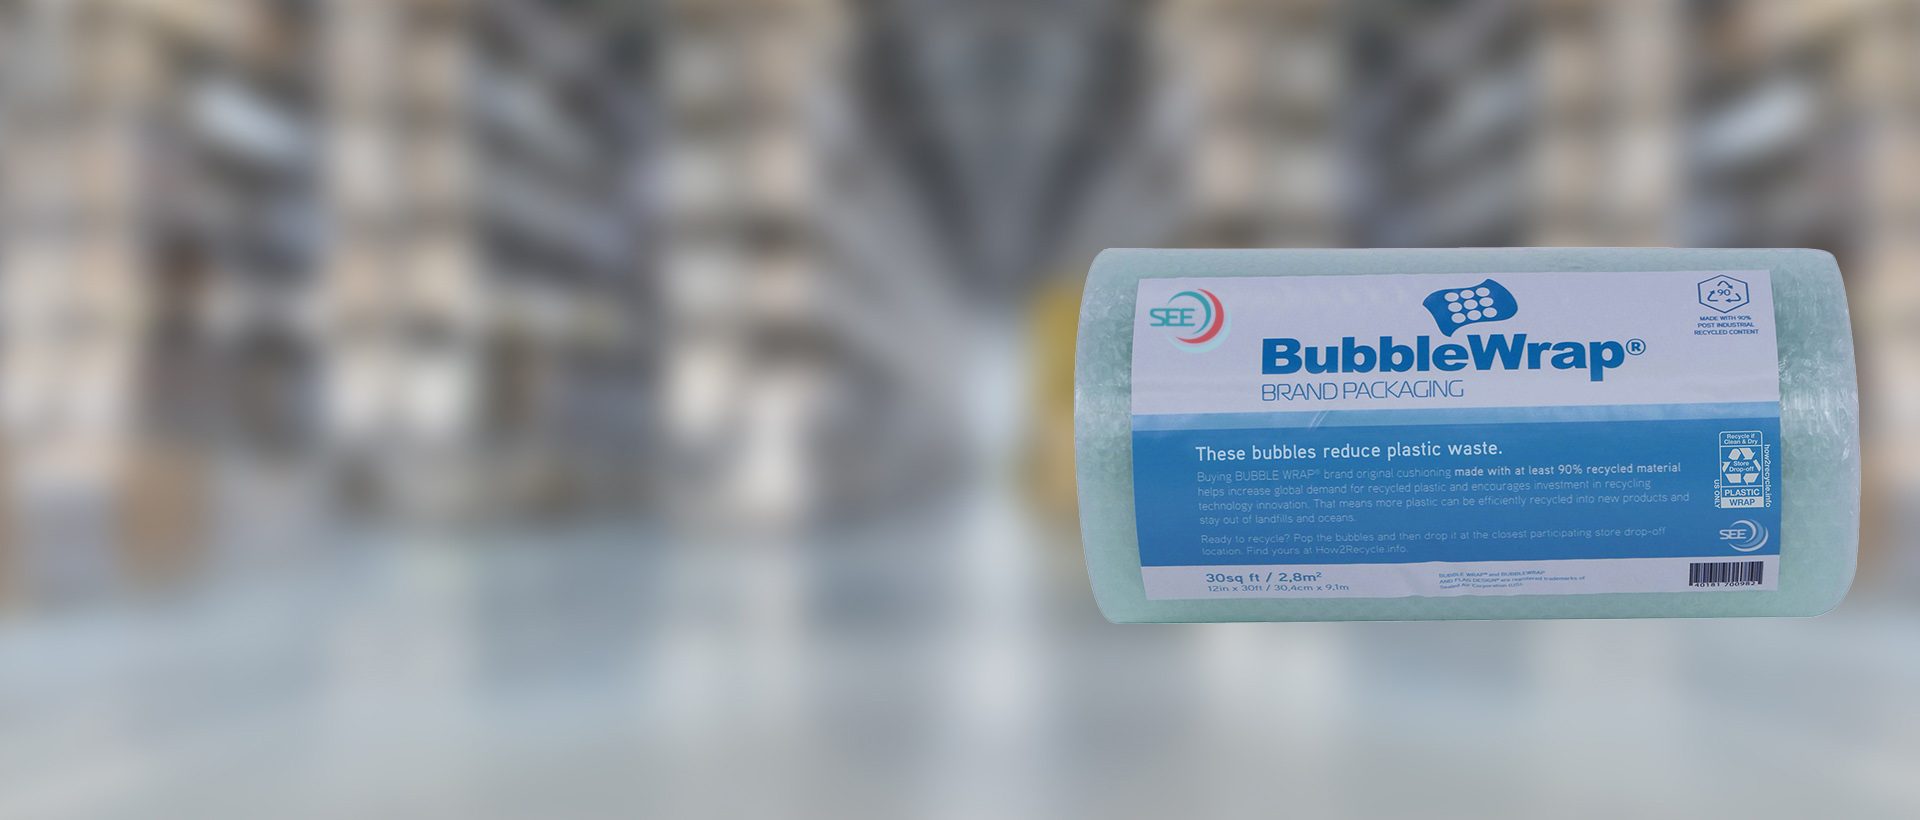 Film bulles à contenu recyclé de la marque Bubble Wrap